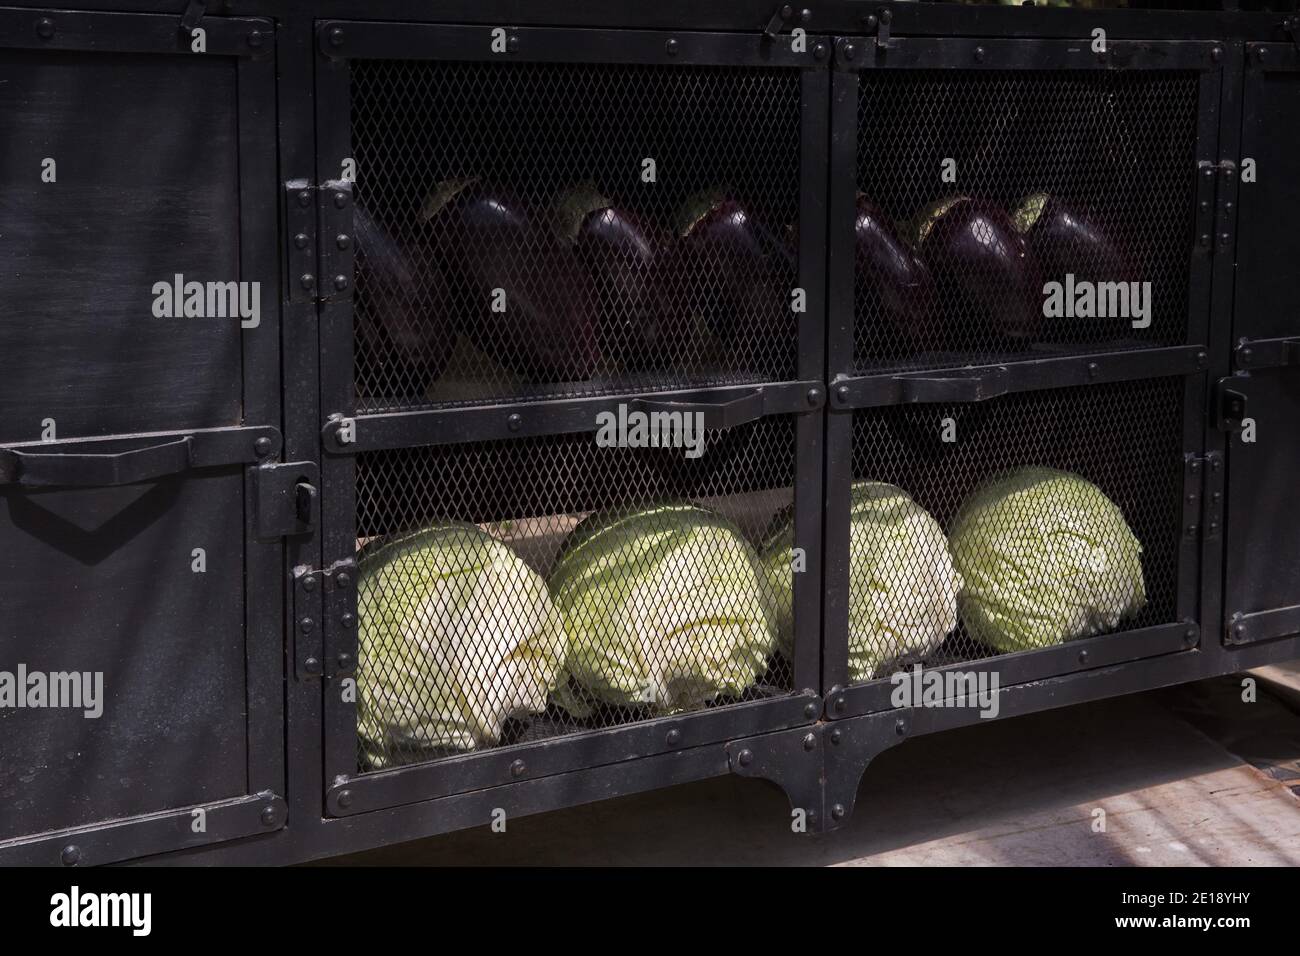 Gemüse in Gefangenschaft. Reife Kohlköpfe und Auberginen werden von Vegetariern in Käfigen gehalten Stockfoto